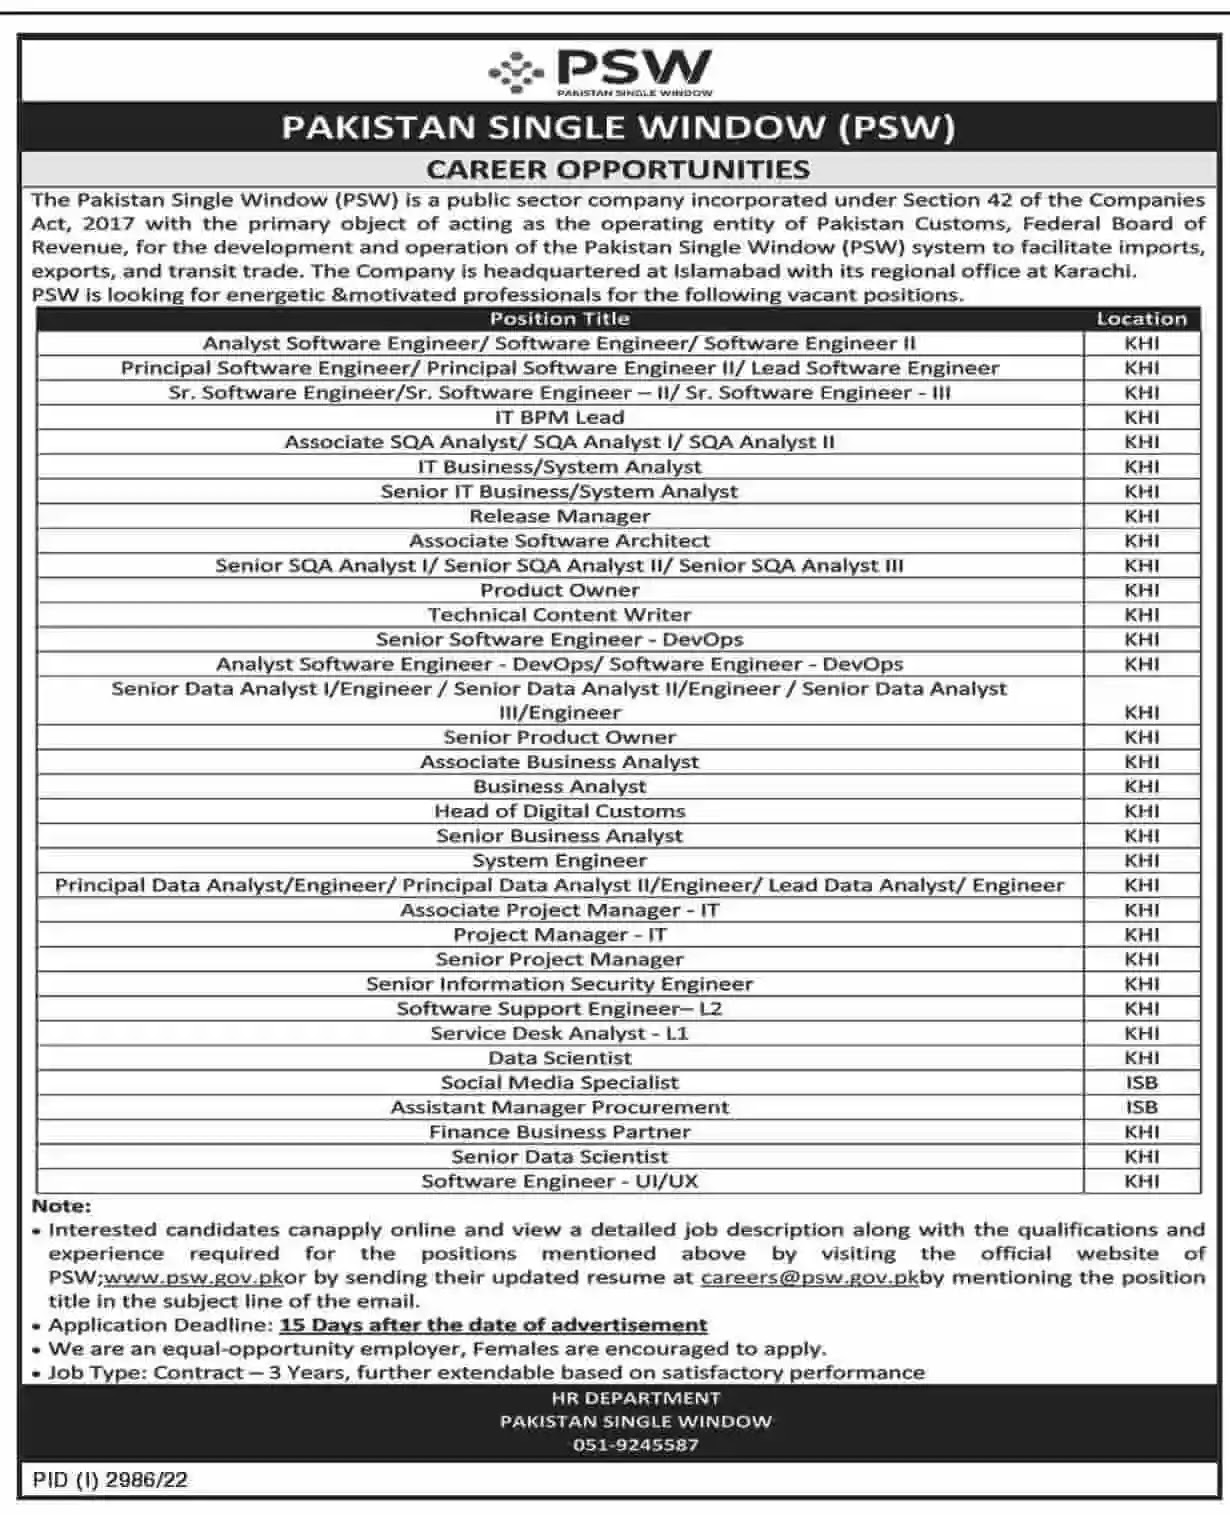 Pakistan Single Window Jobs 2023 - PSW Jobs 2023 - www.psw.gov.pk Jobs 2023